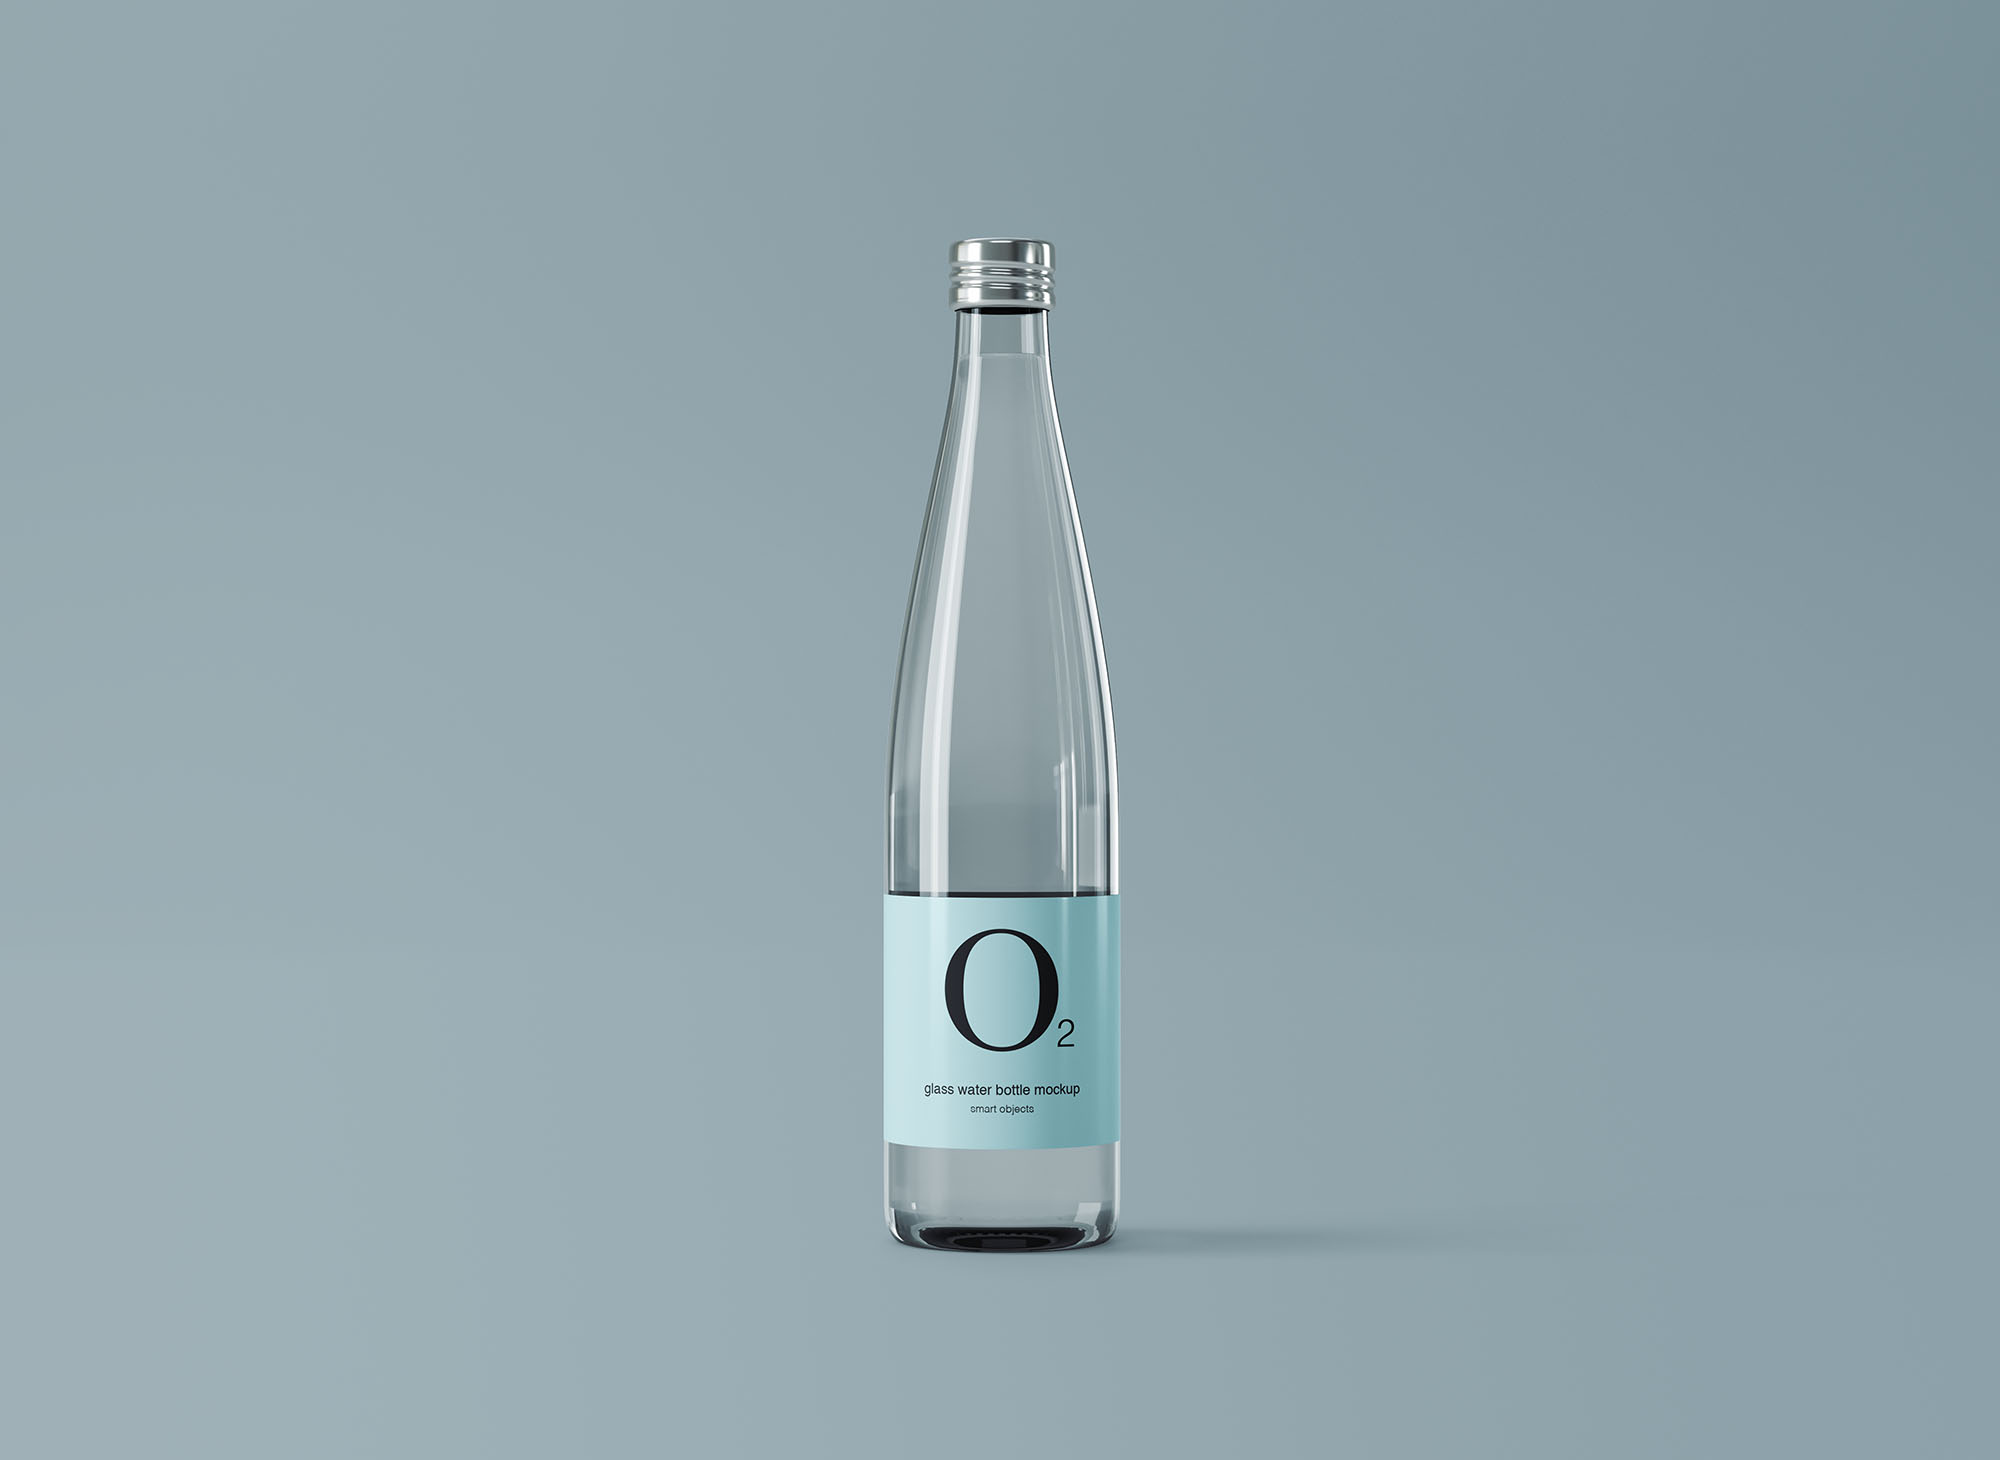 极简设计风格玻璃纯净水矿泉水瓶外观设计图大洋岛精选 Minimal Glass Water Bottle Mockup插图